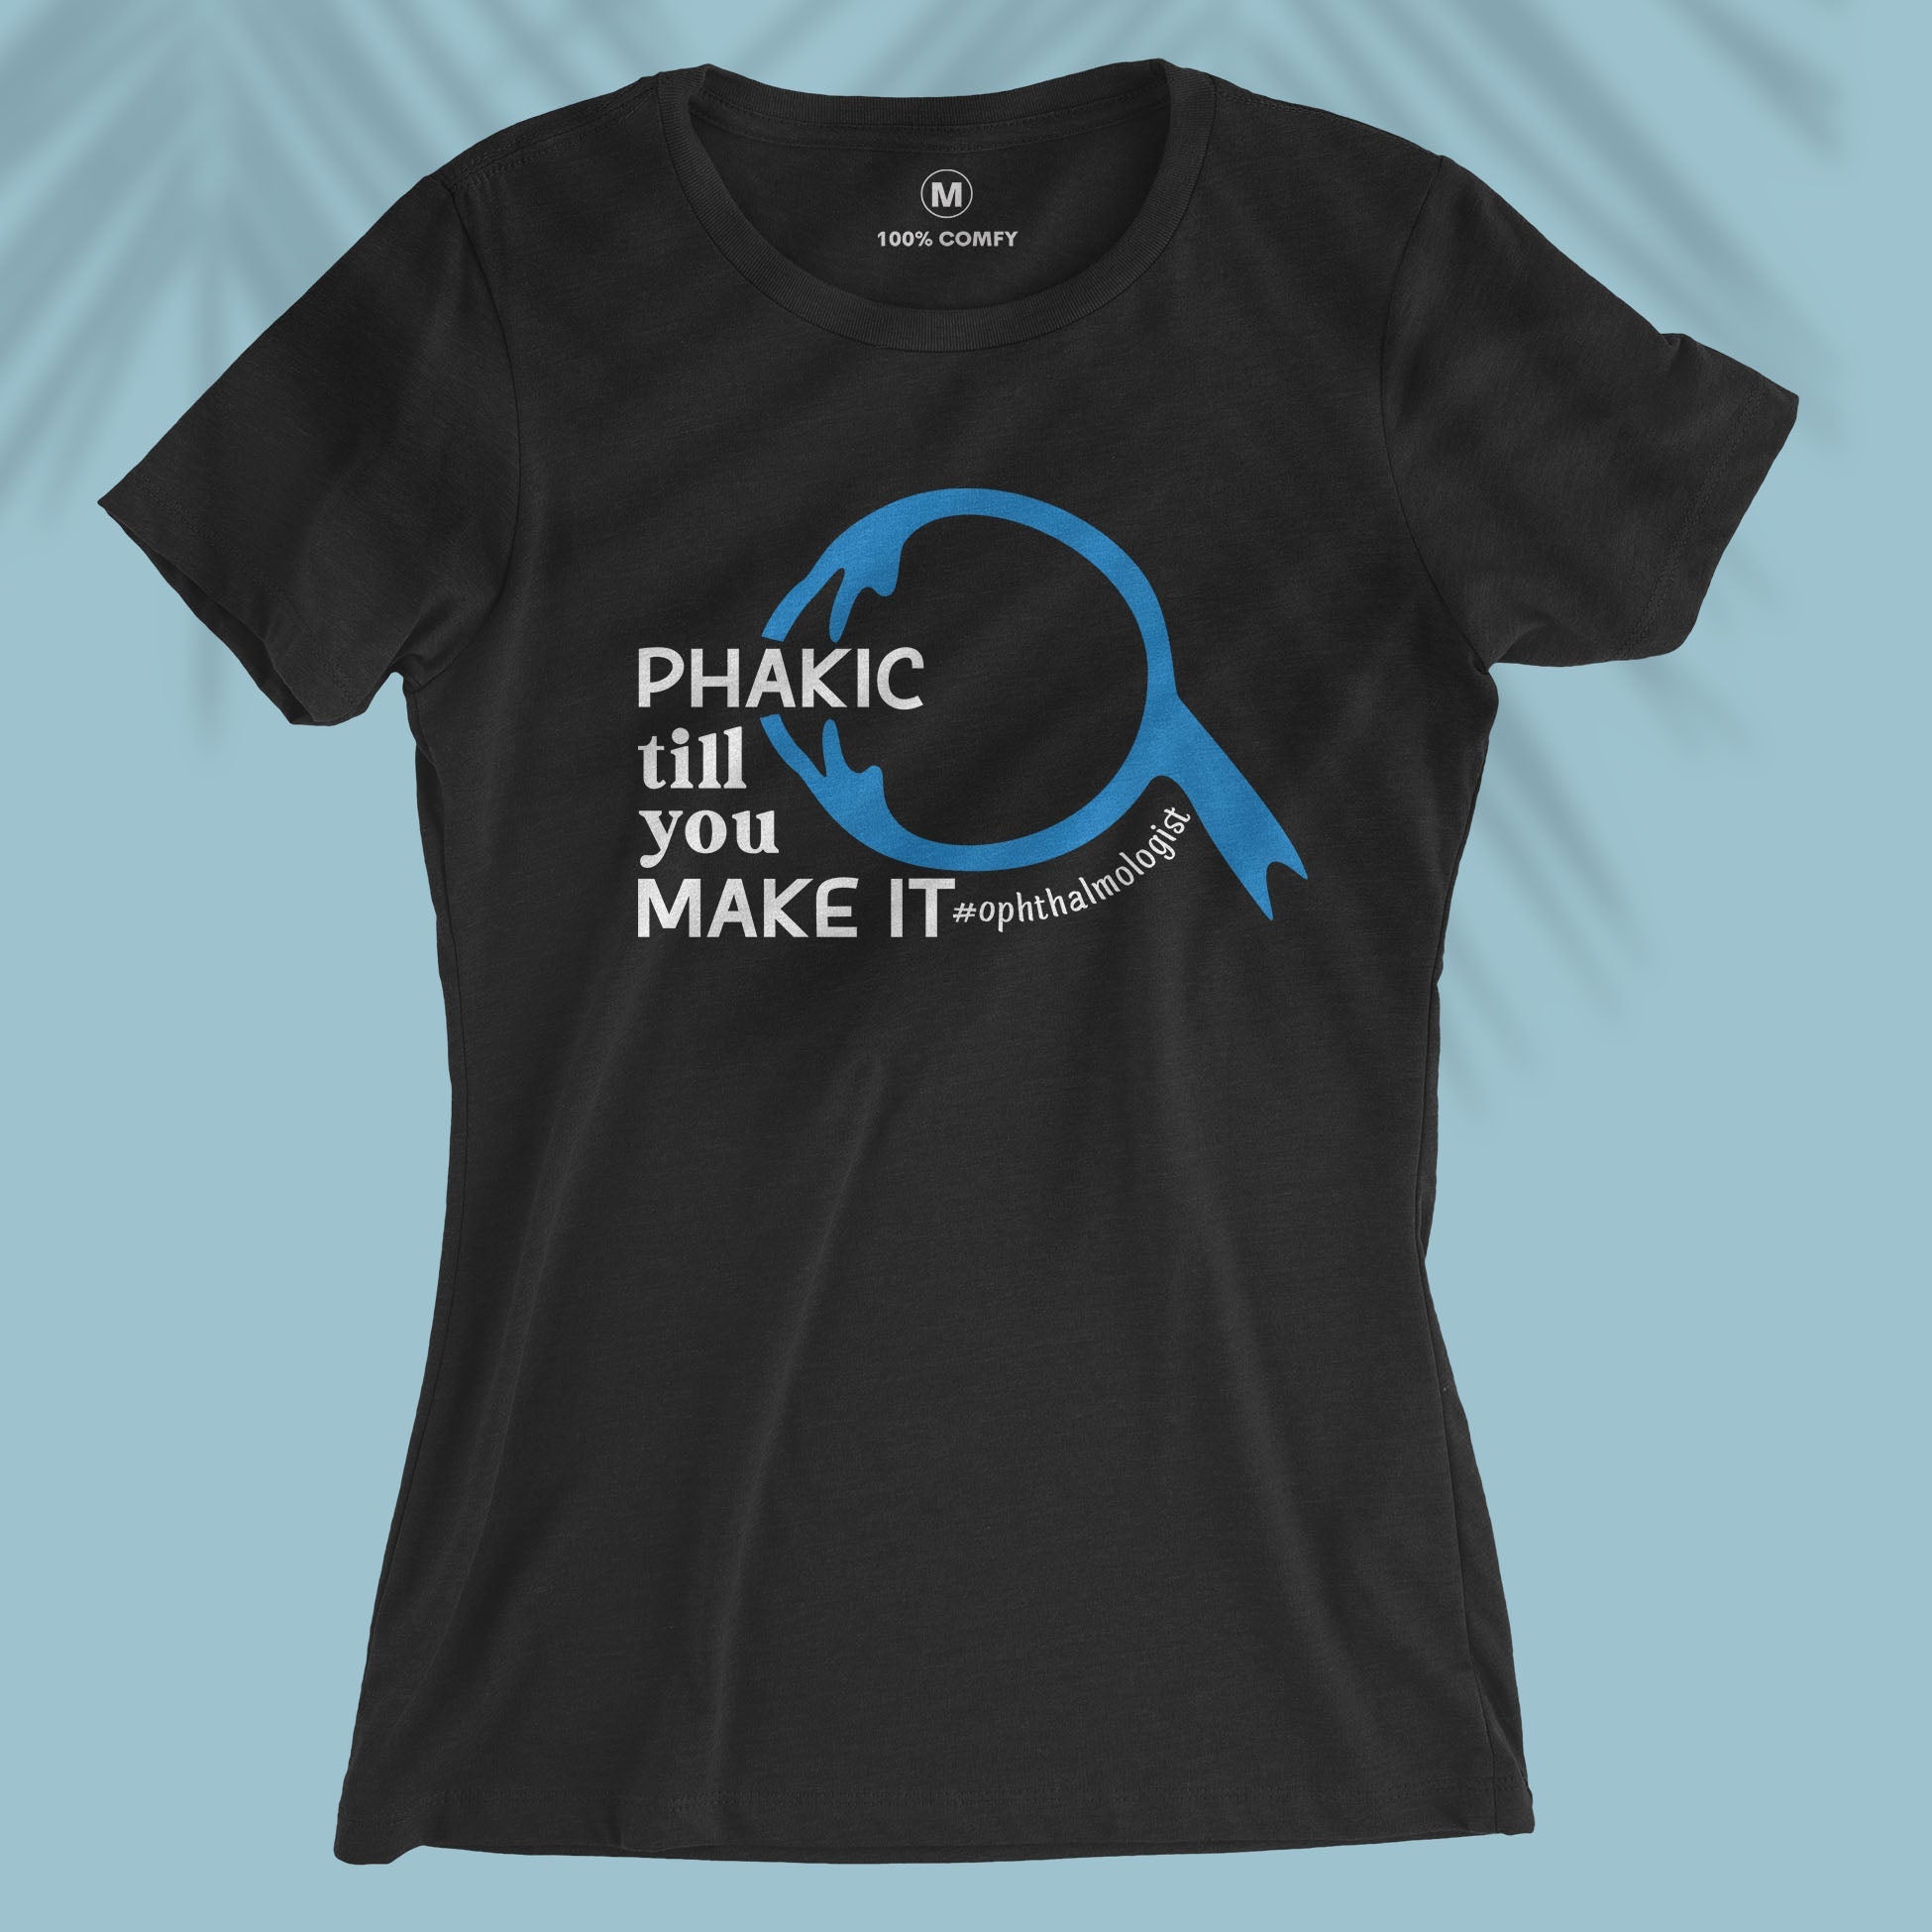 Phakic - Women T-shirt